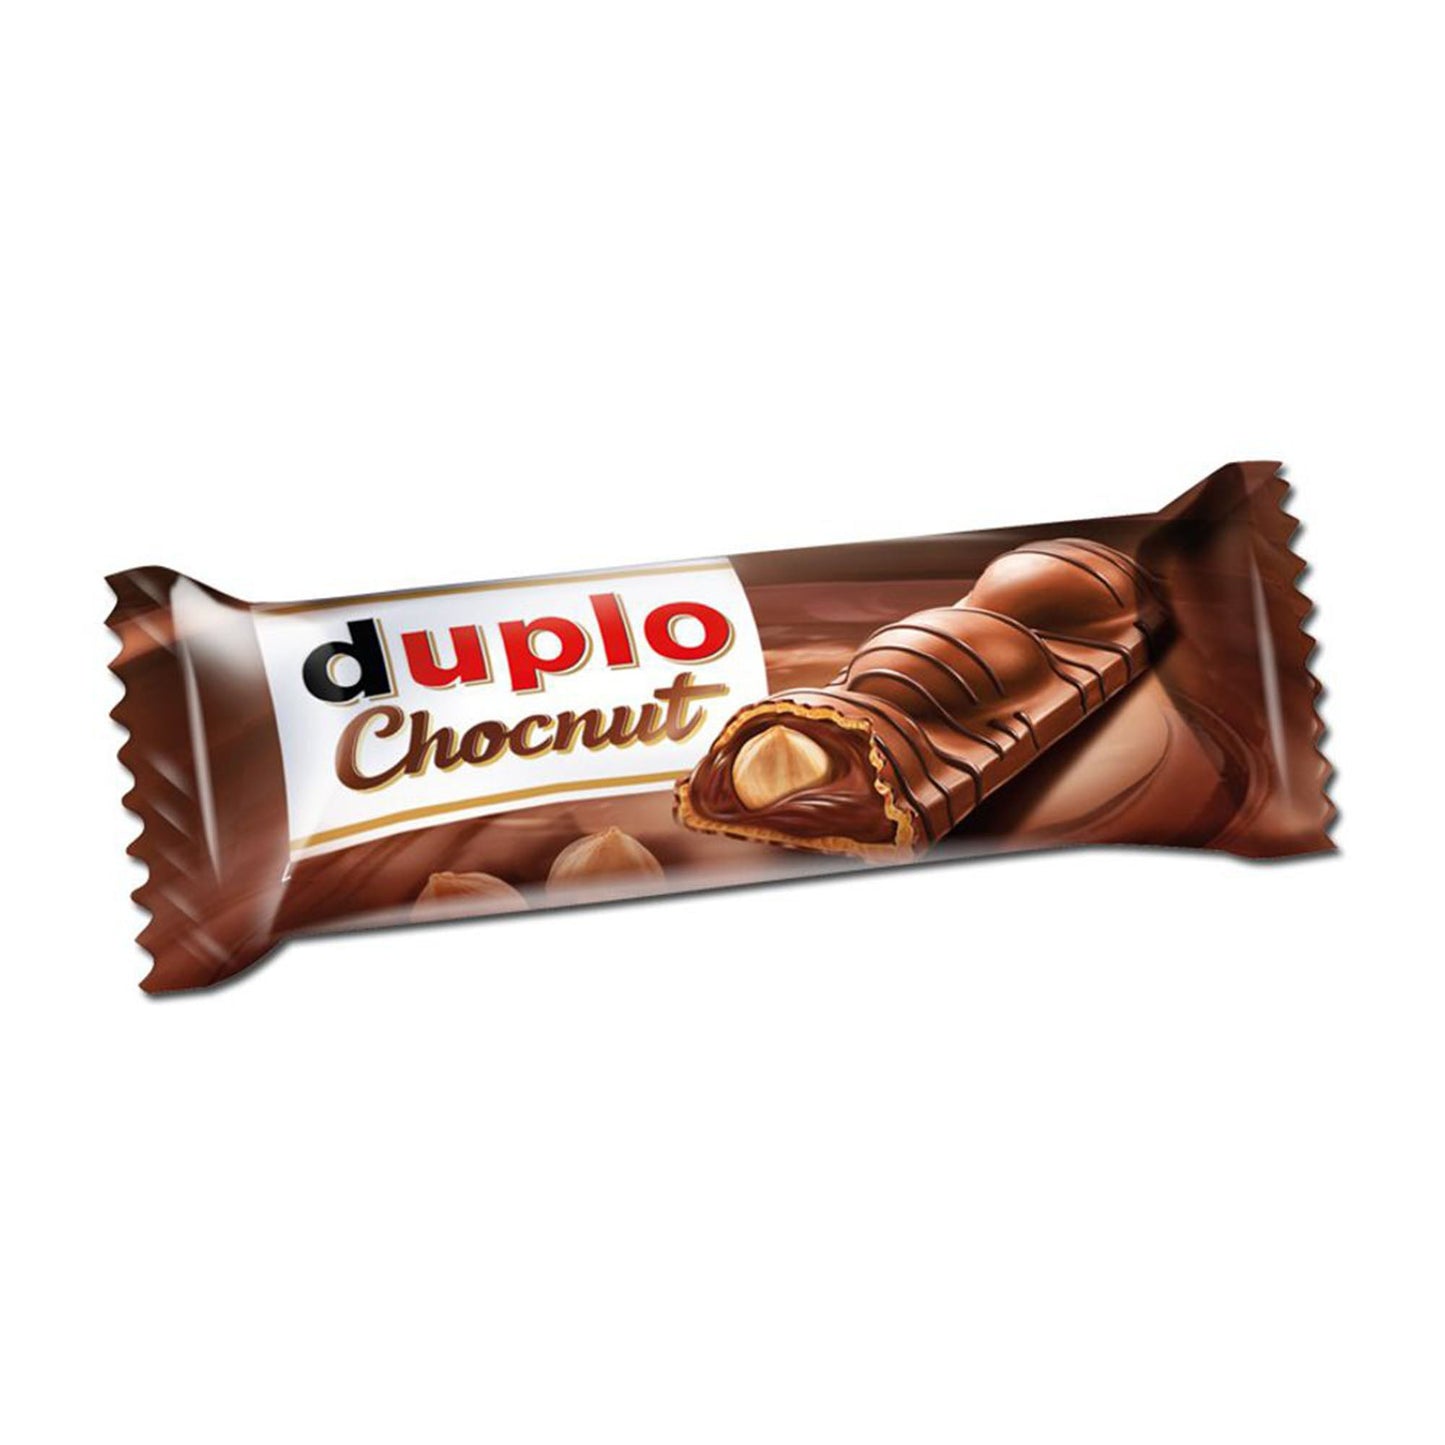 Duplo Chocnut 26G